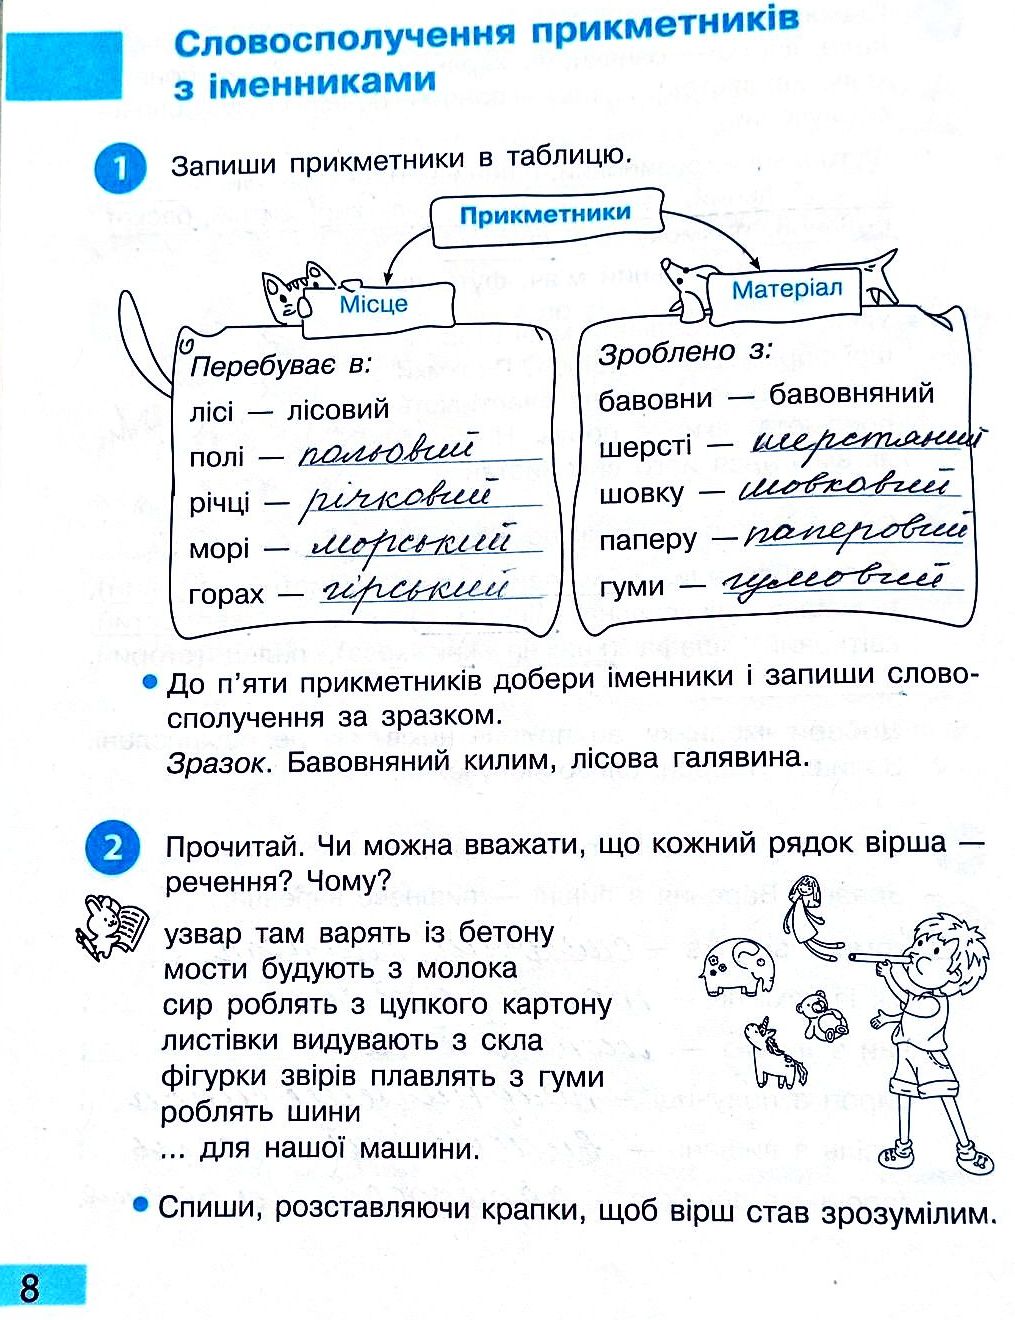 Сторінка 8 частина 2 гдз 3 клас робочий зошит українська мова Большакова